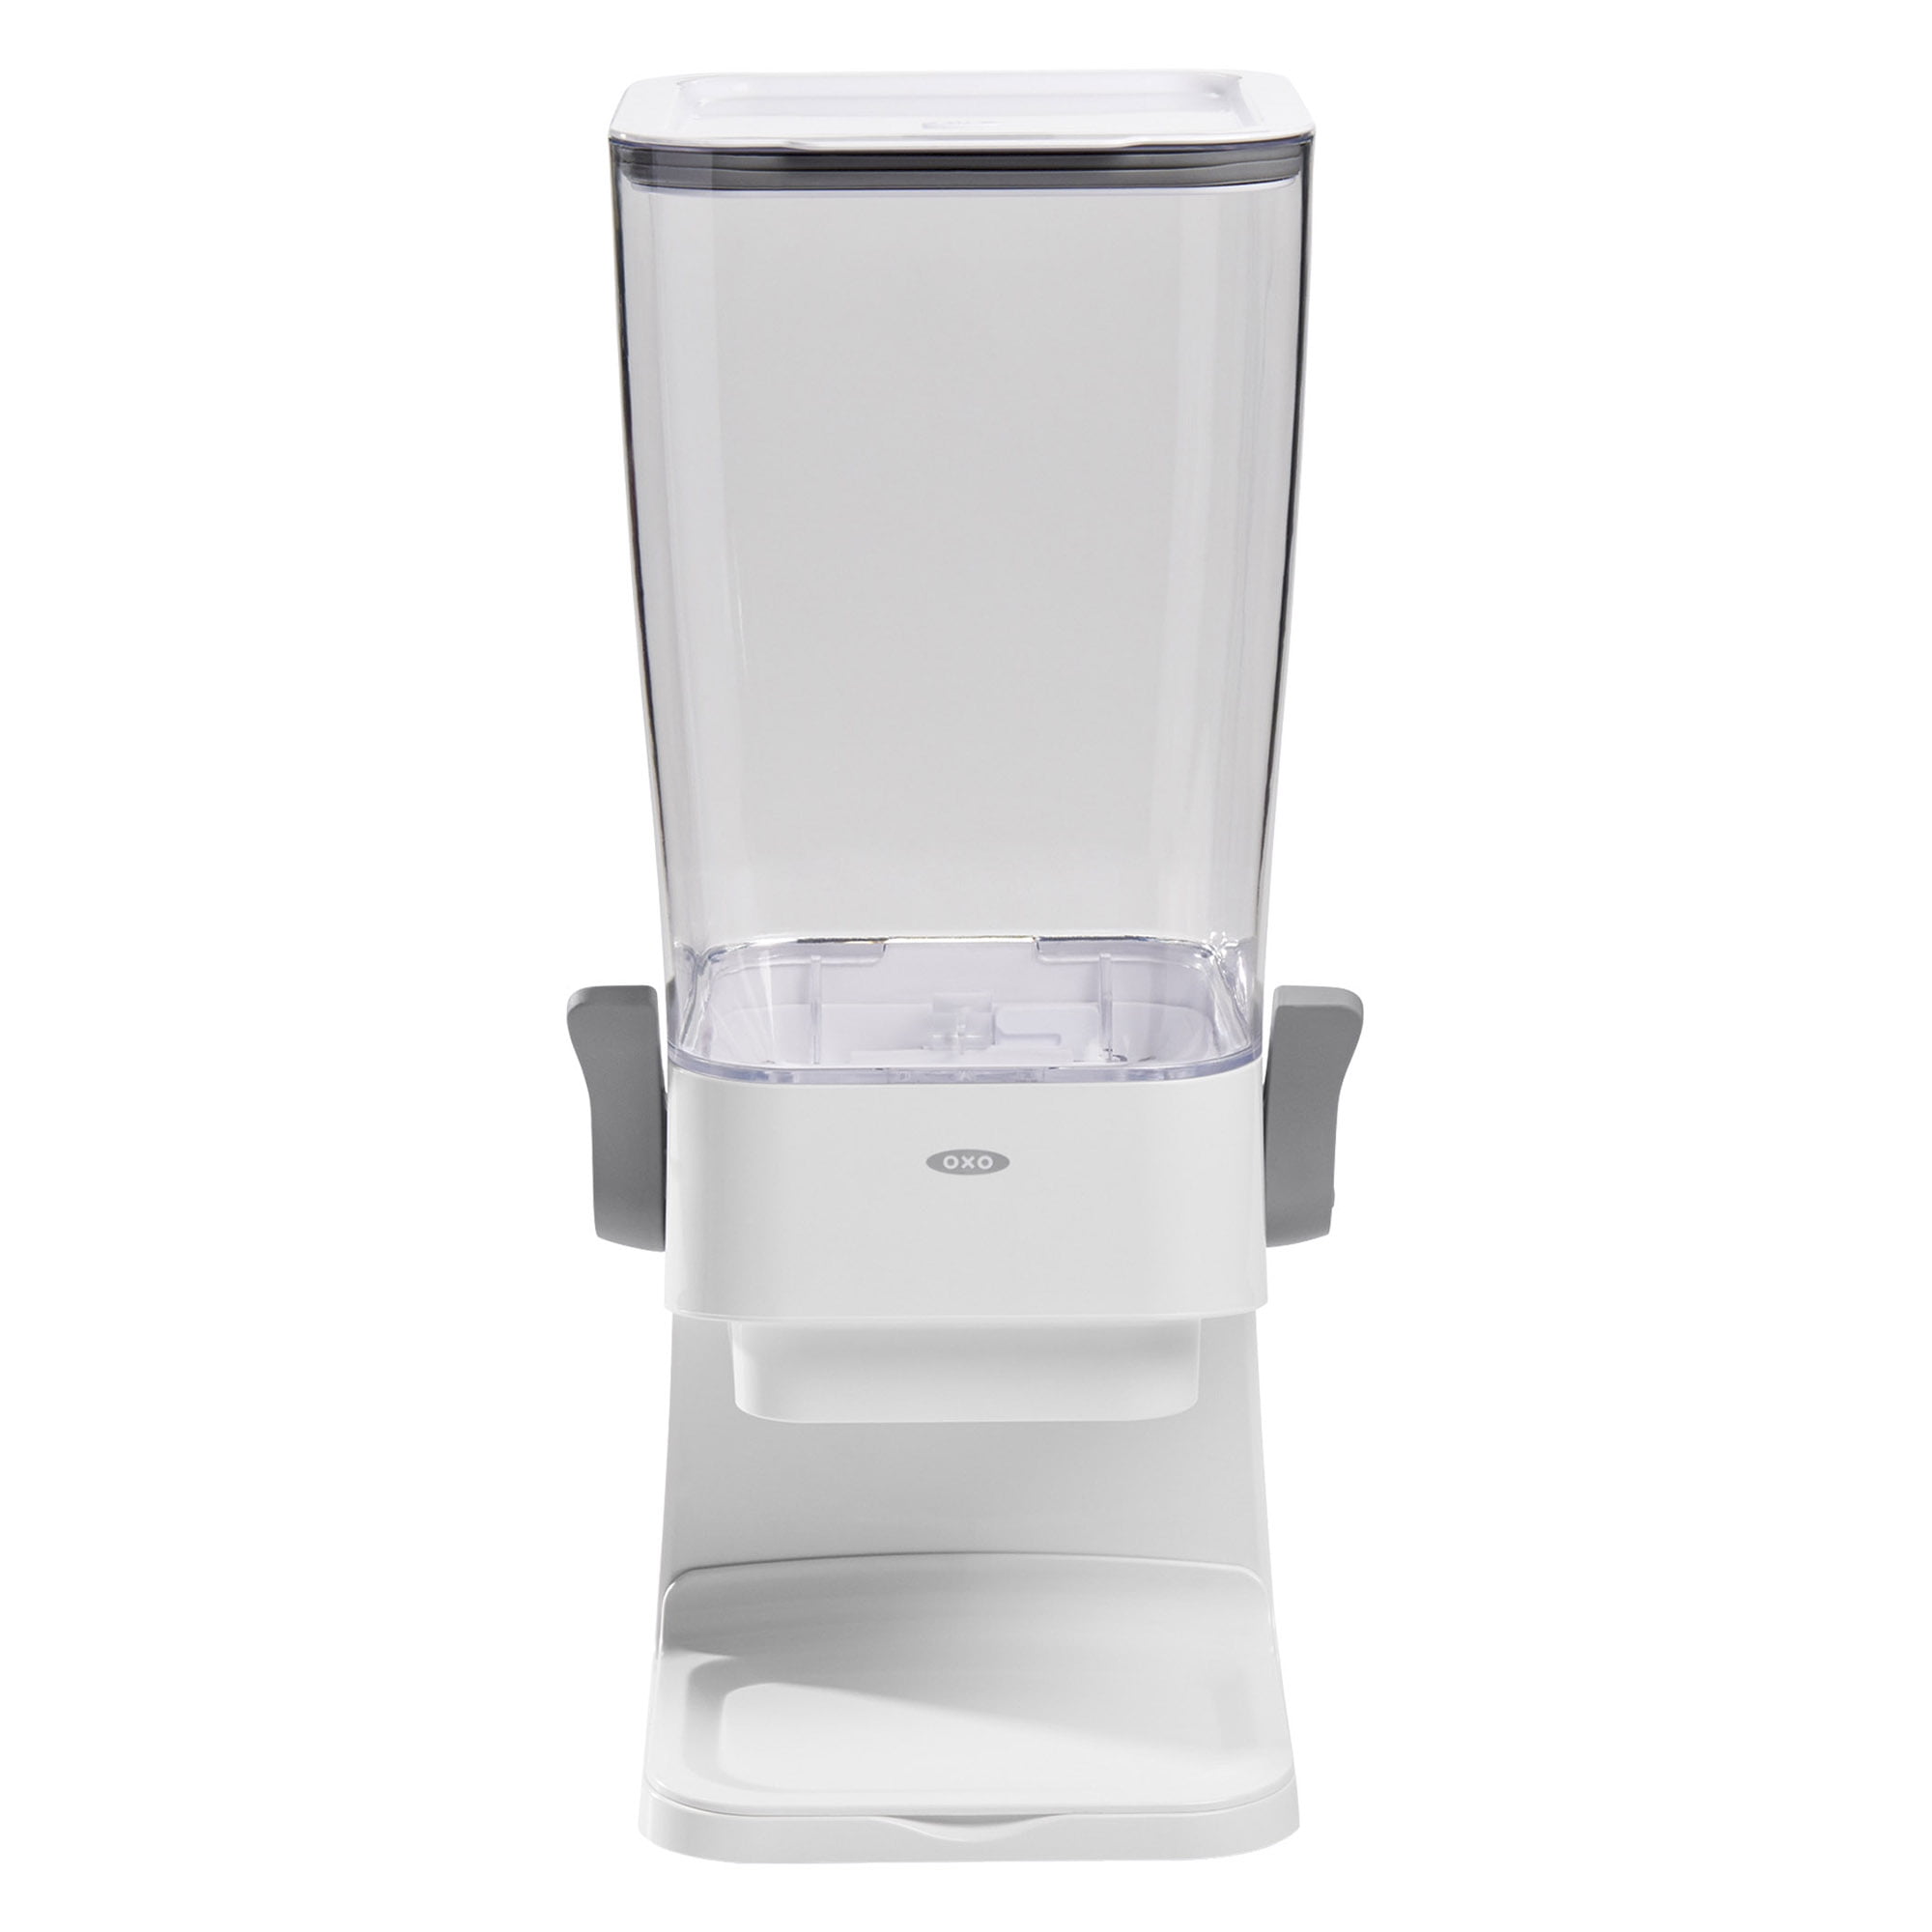 OXO Good Grips POP Cereal Dispenser - Clear/White, 3 pk - Kroger